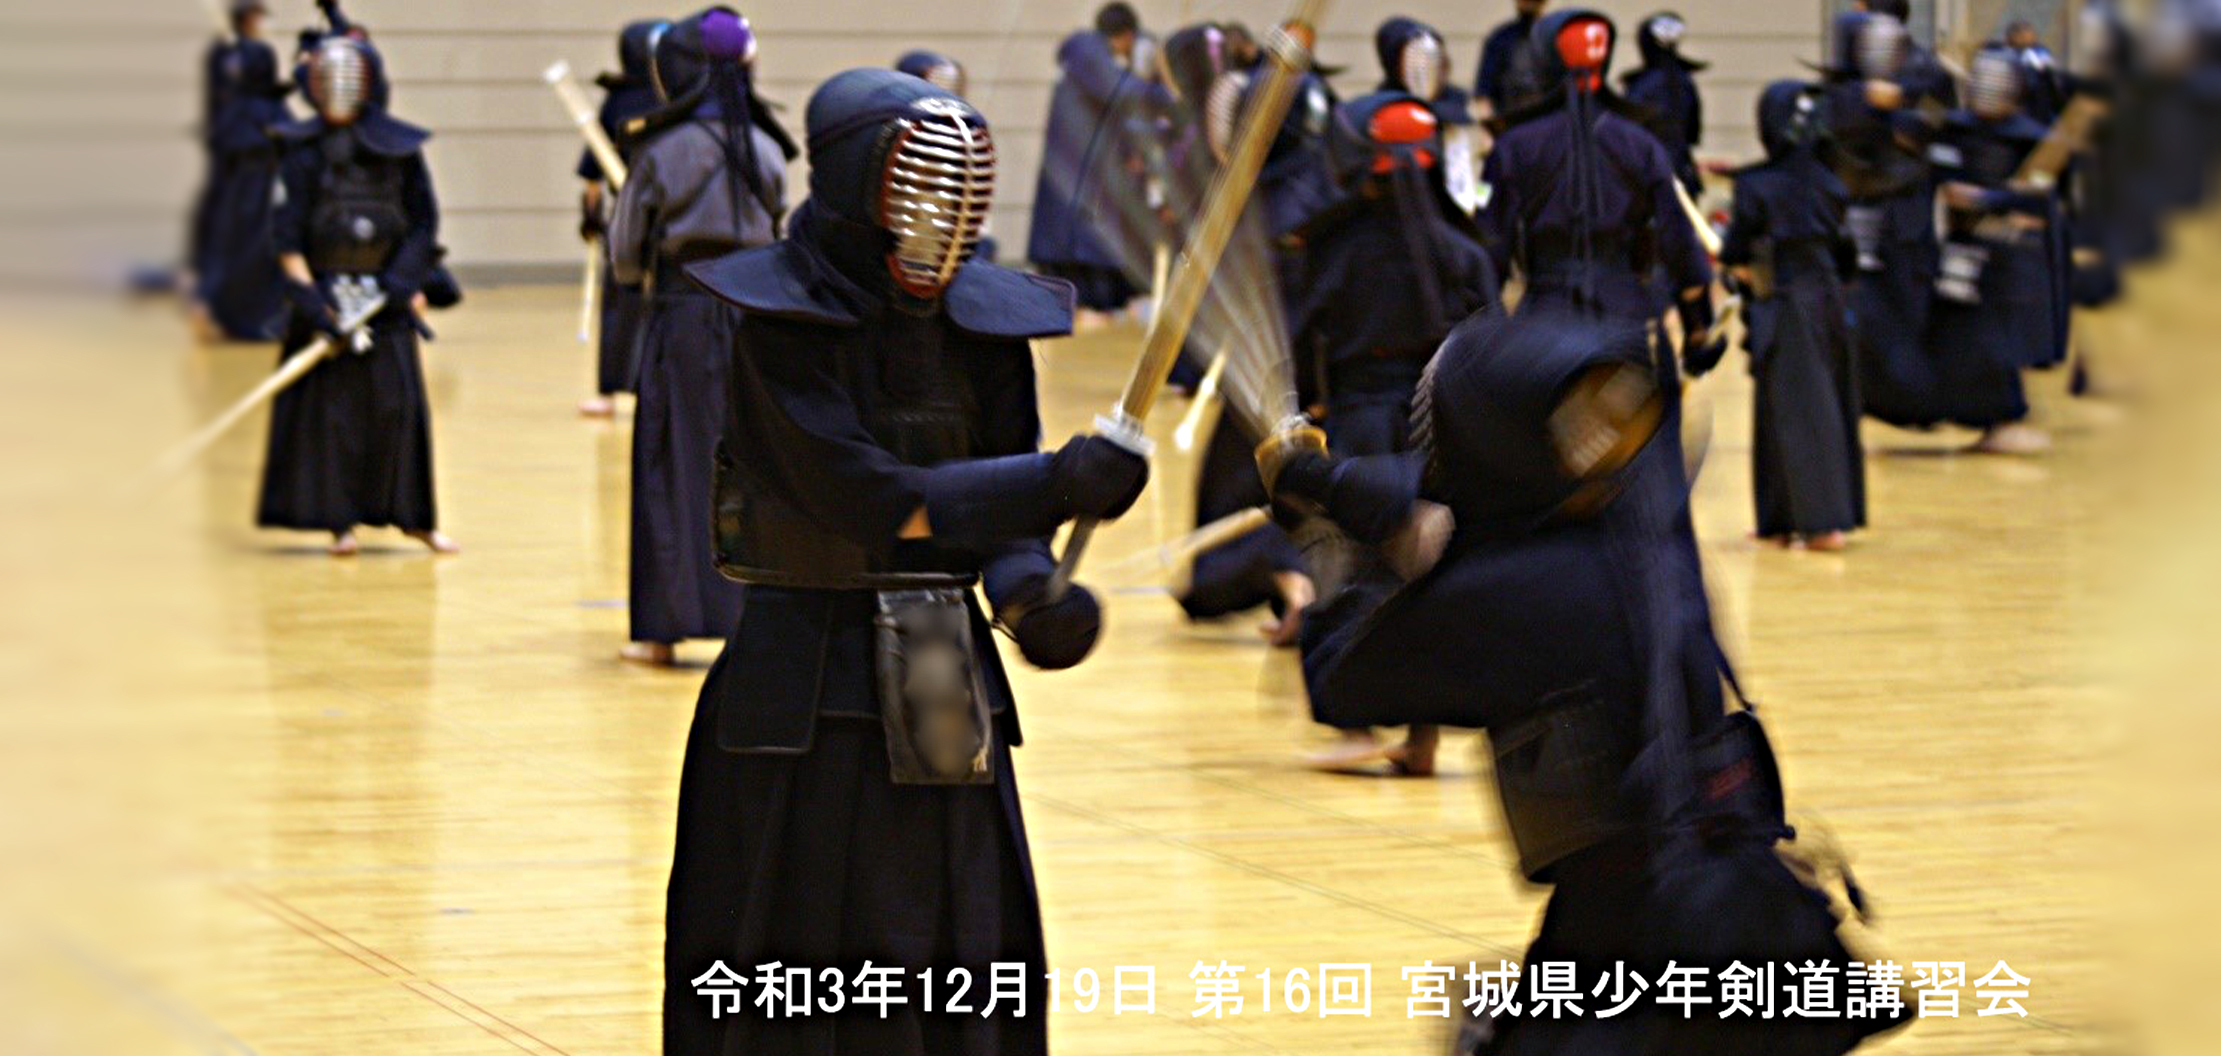 一般財団法人 宮城県剣道連盟 剣道は剣の理法の修練による人間形成の道である